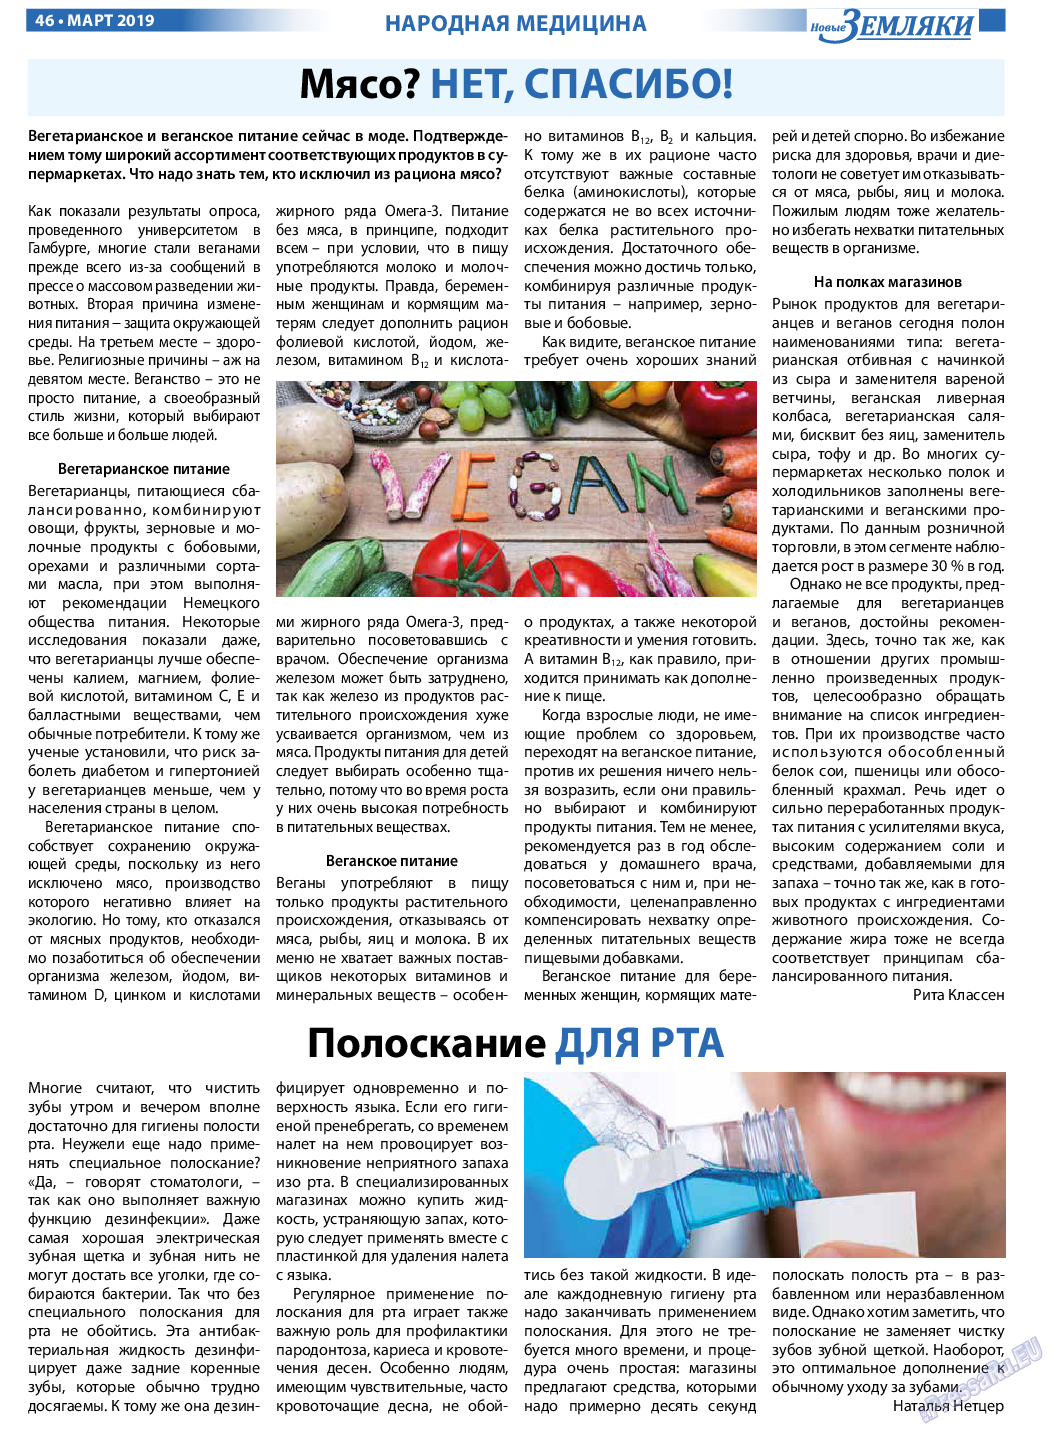 Новые Земляки (газета). 2019 год, номер 3, стр. 46